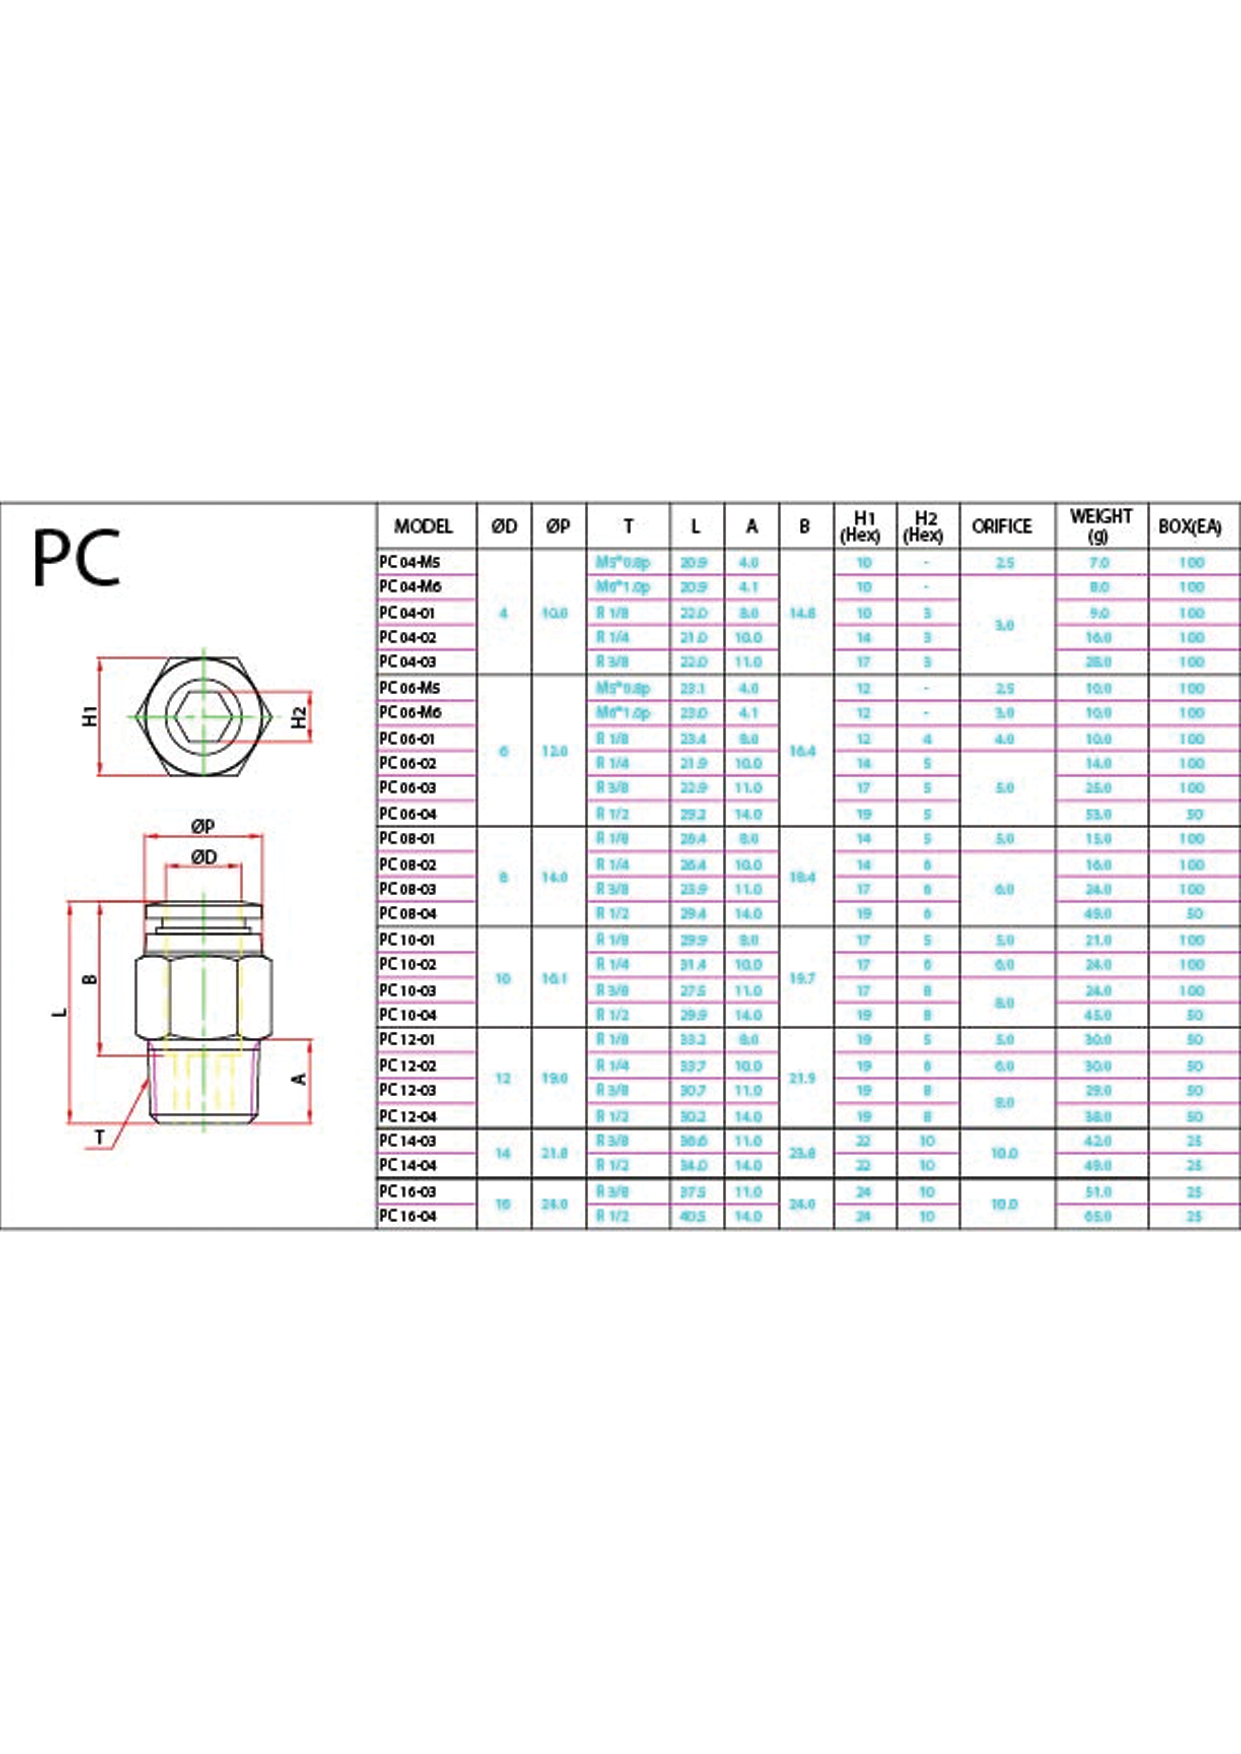 PC (Metric) Data Sheet ( 142 KB )